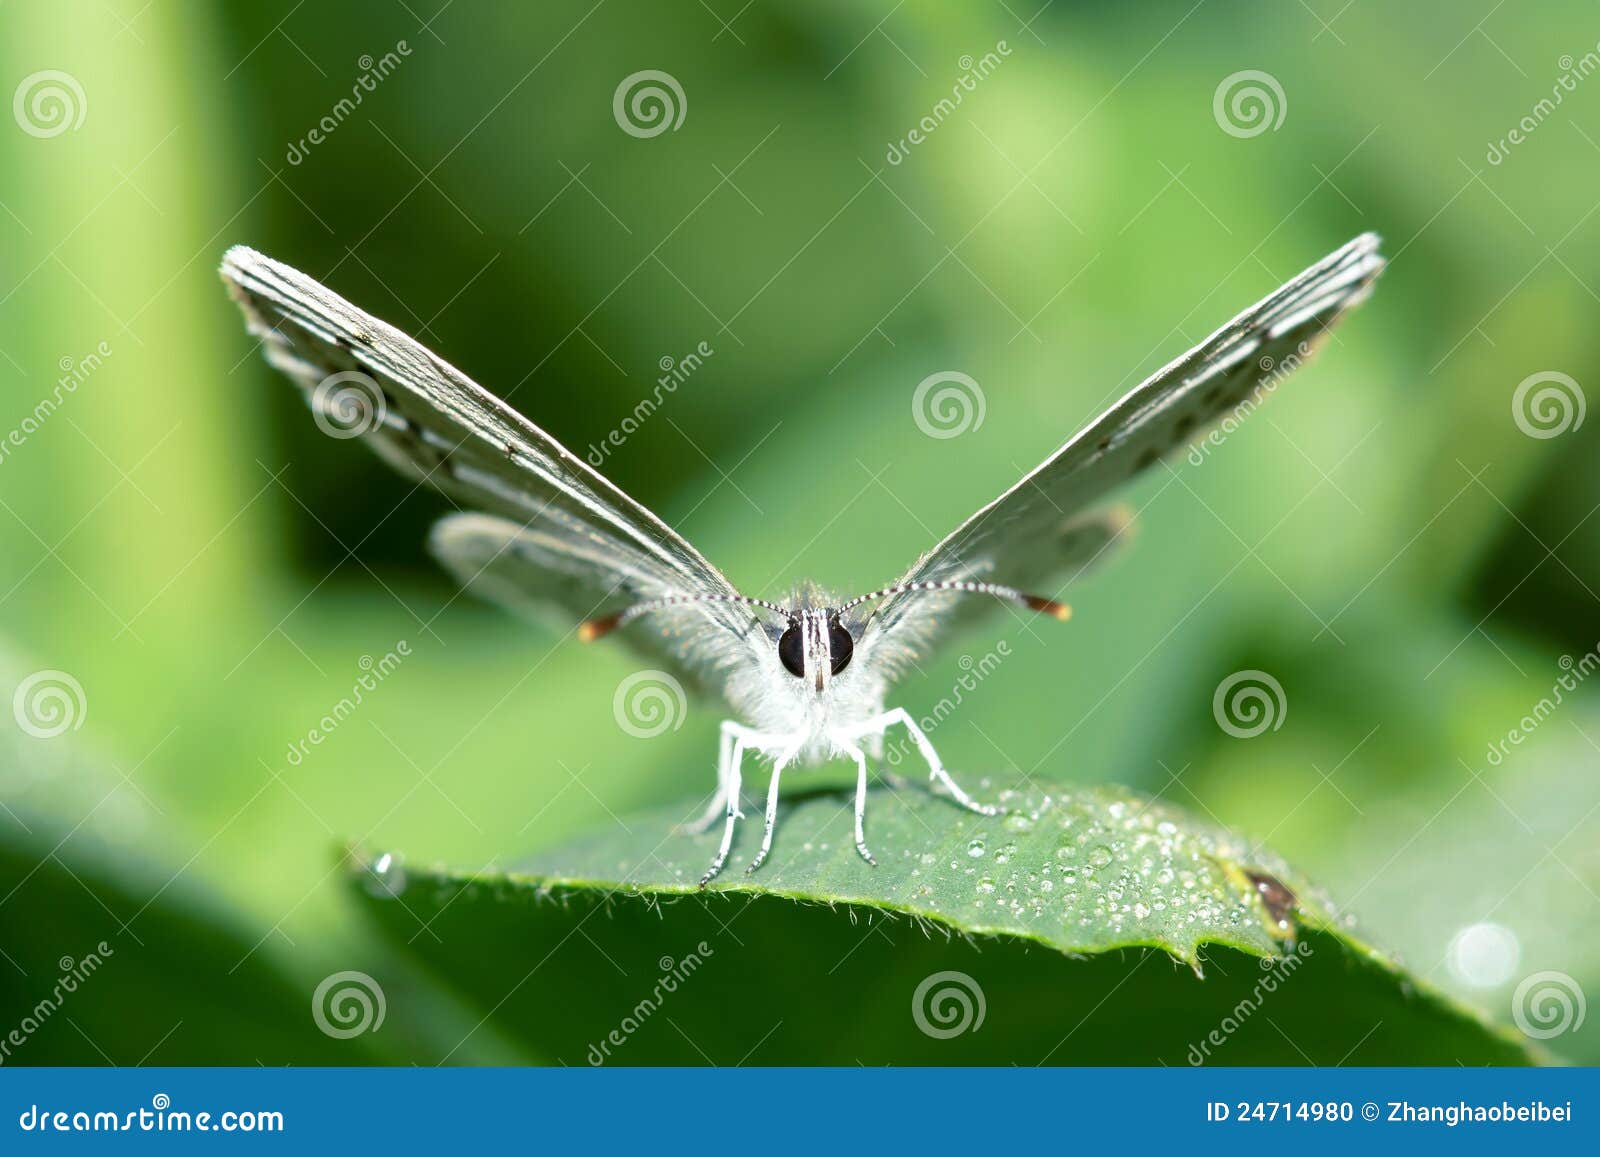 lycaenidae butterfly